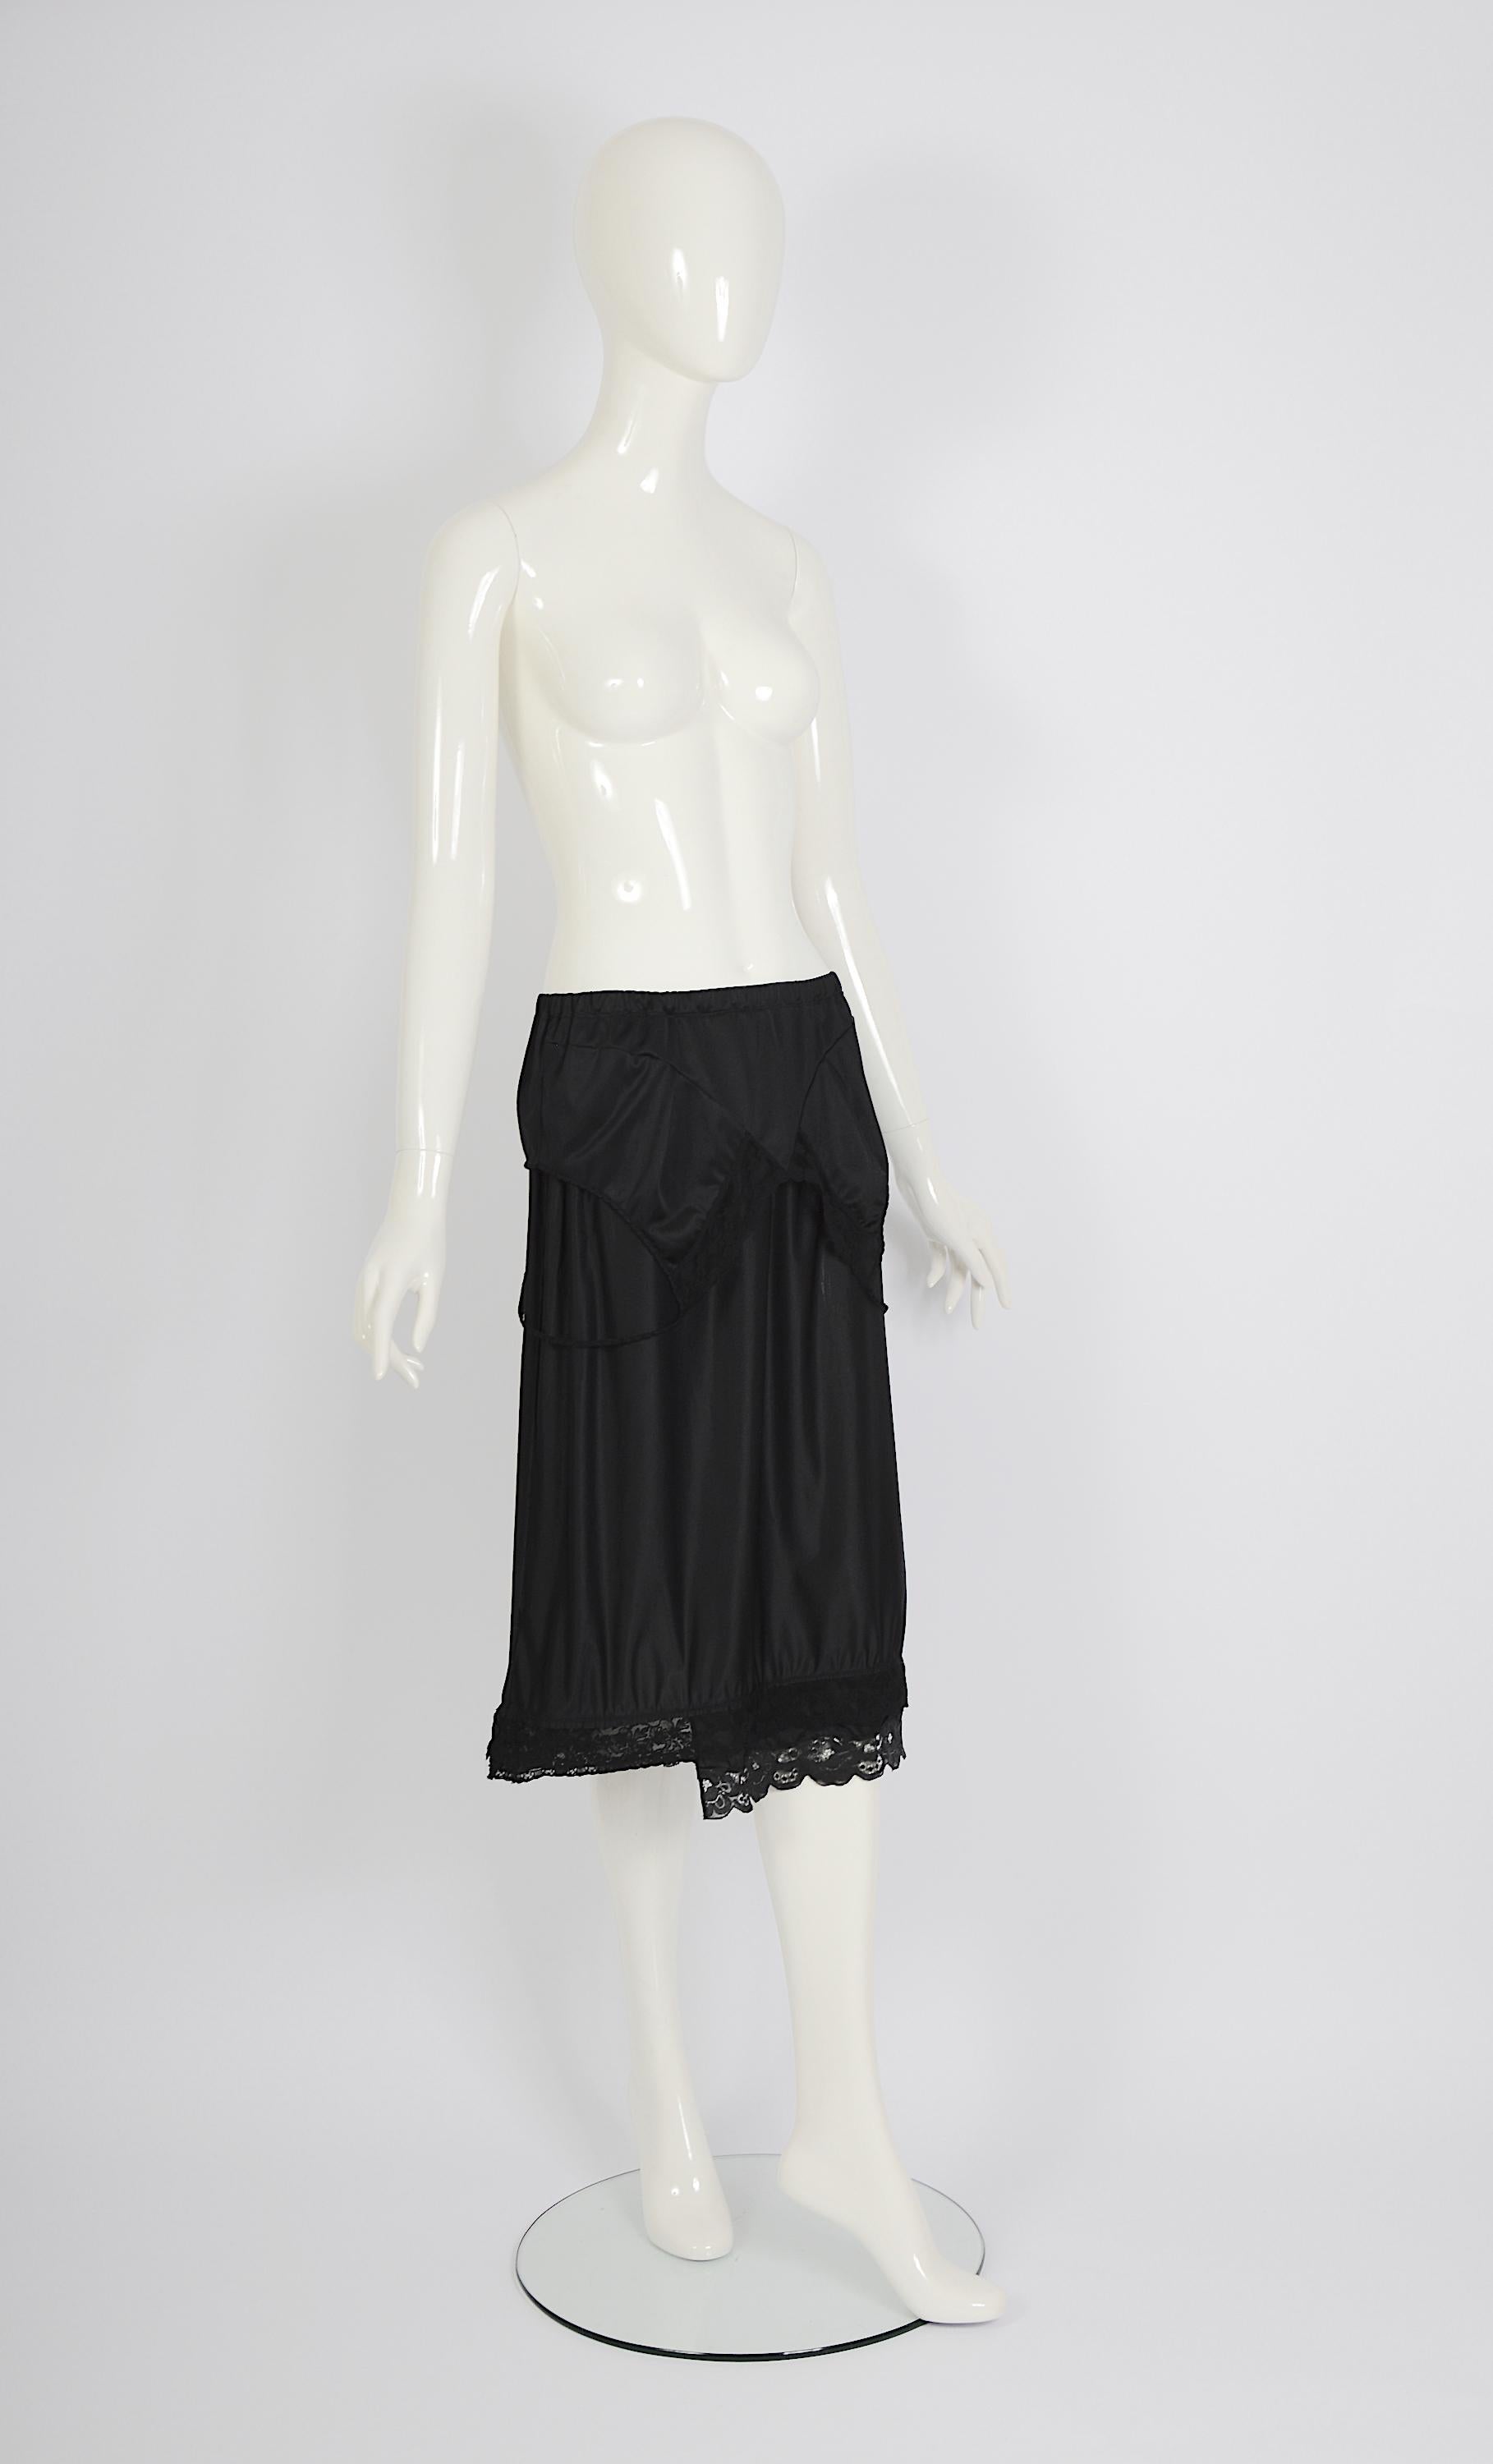 Women's Vintage Martin Margiela artisanal ss 2003 runway black folded dress skirt For Sale